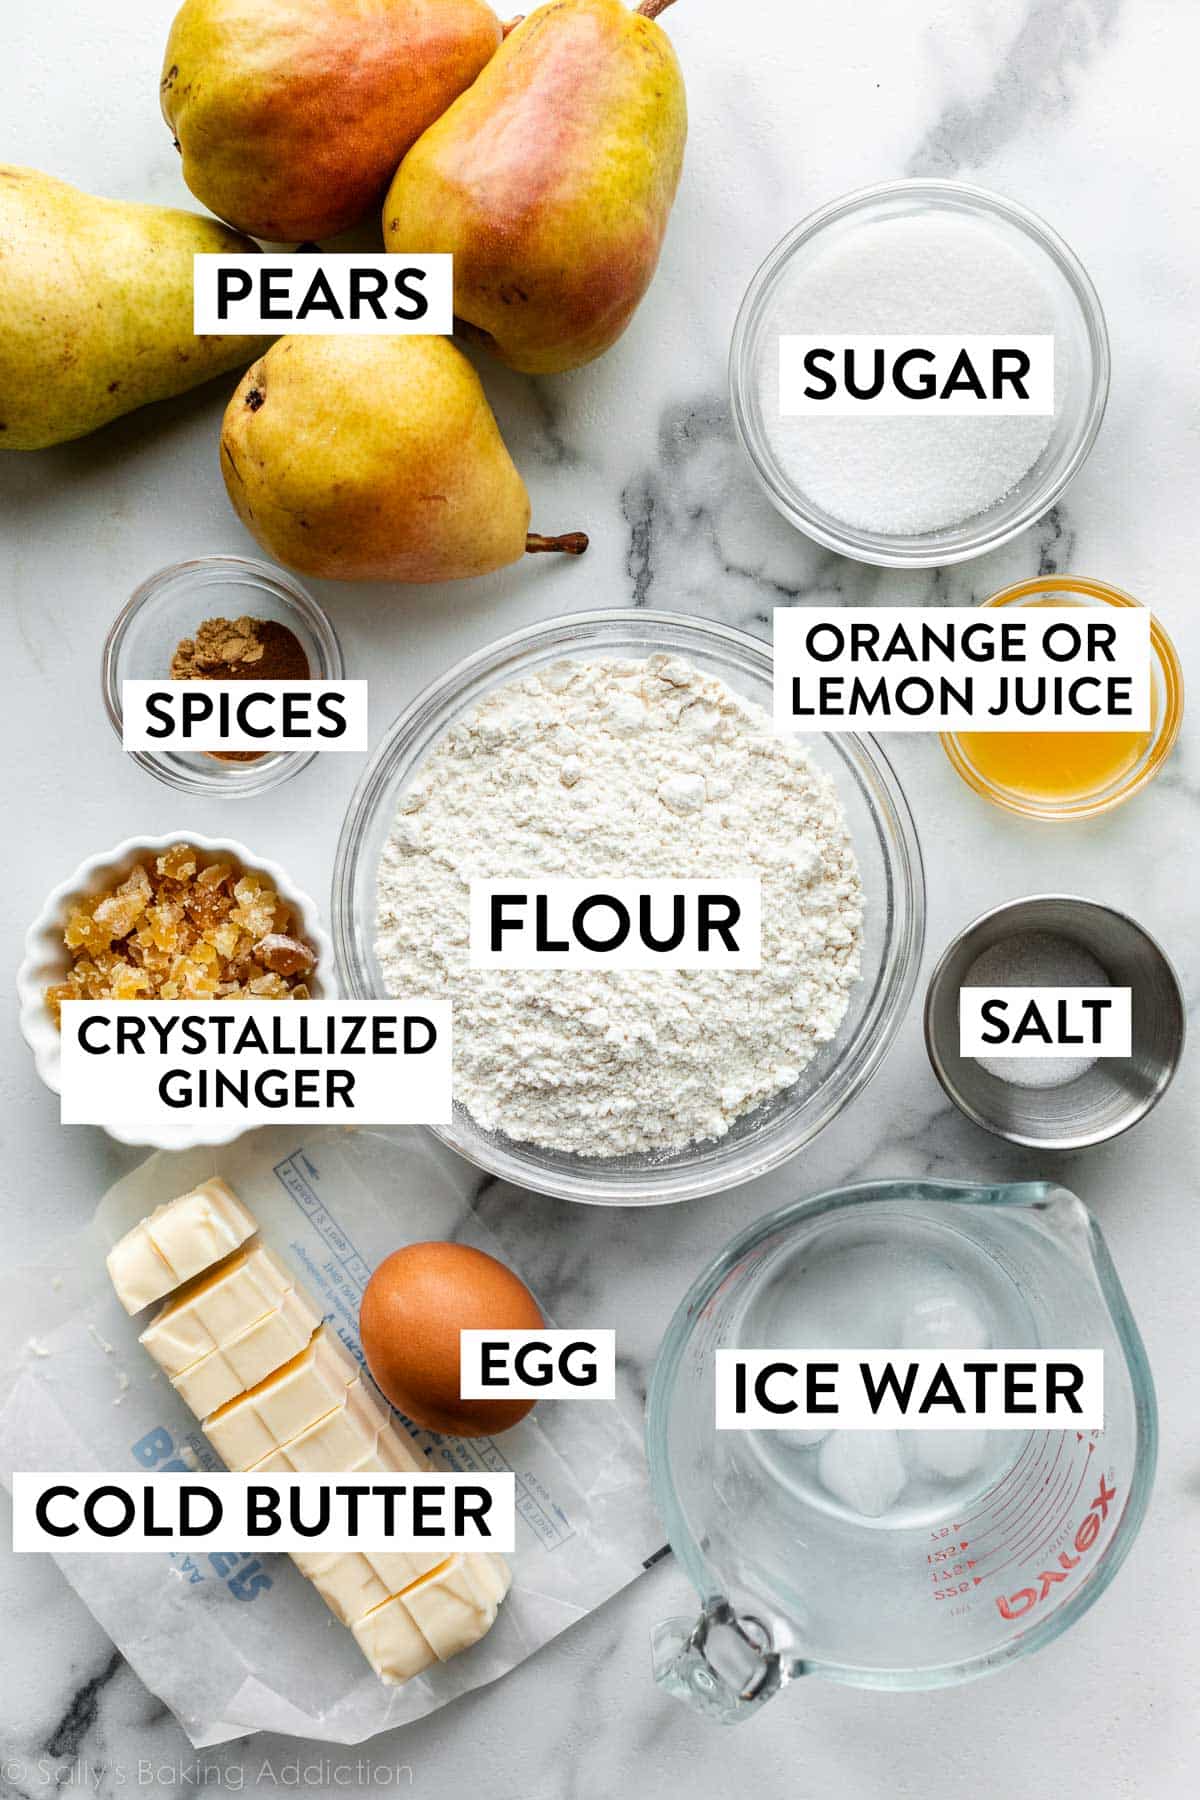 ingredienti sul bancone tra cui farina, pere, zucchero, sale, acqua ghiacciata, burro freddo, zenzero e altro ancora.